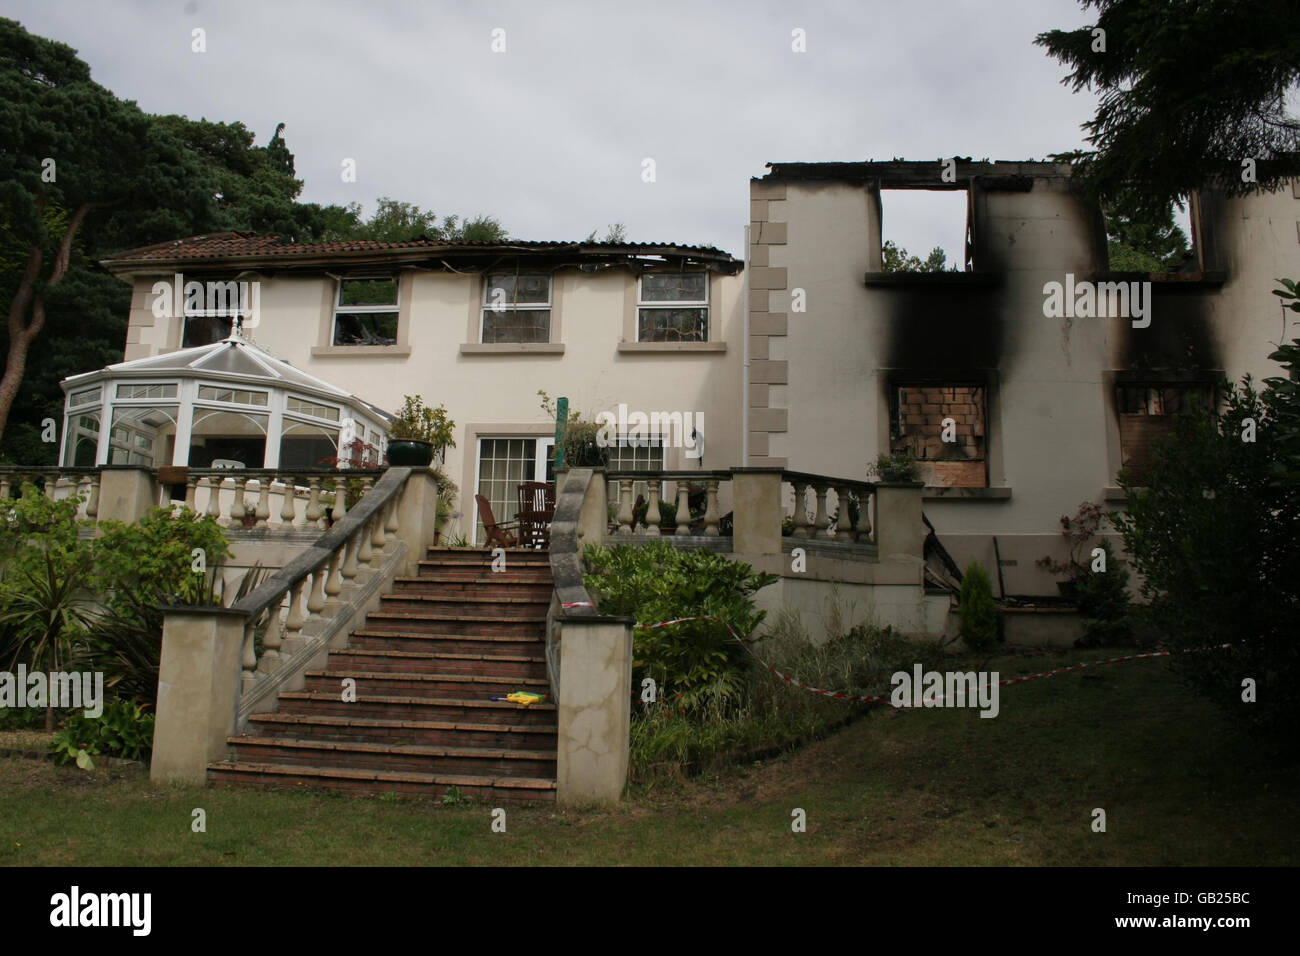 RITRASMESSO CORREGGENDO LA BYLINE. Dorset Fire and Rescue foto di un palazzo di 1.5 milioni di persone che ha bruciato la notte scorsa mentre il proprietario della proprietà era in vacanza con la sua famiglia a New York. Foto Stock